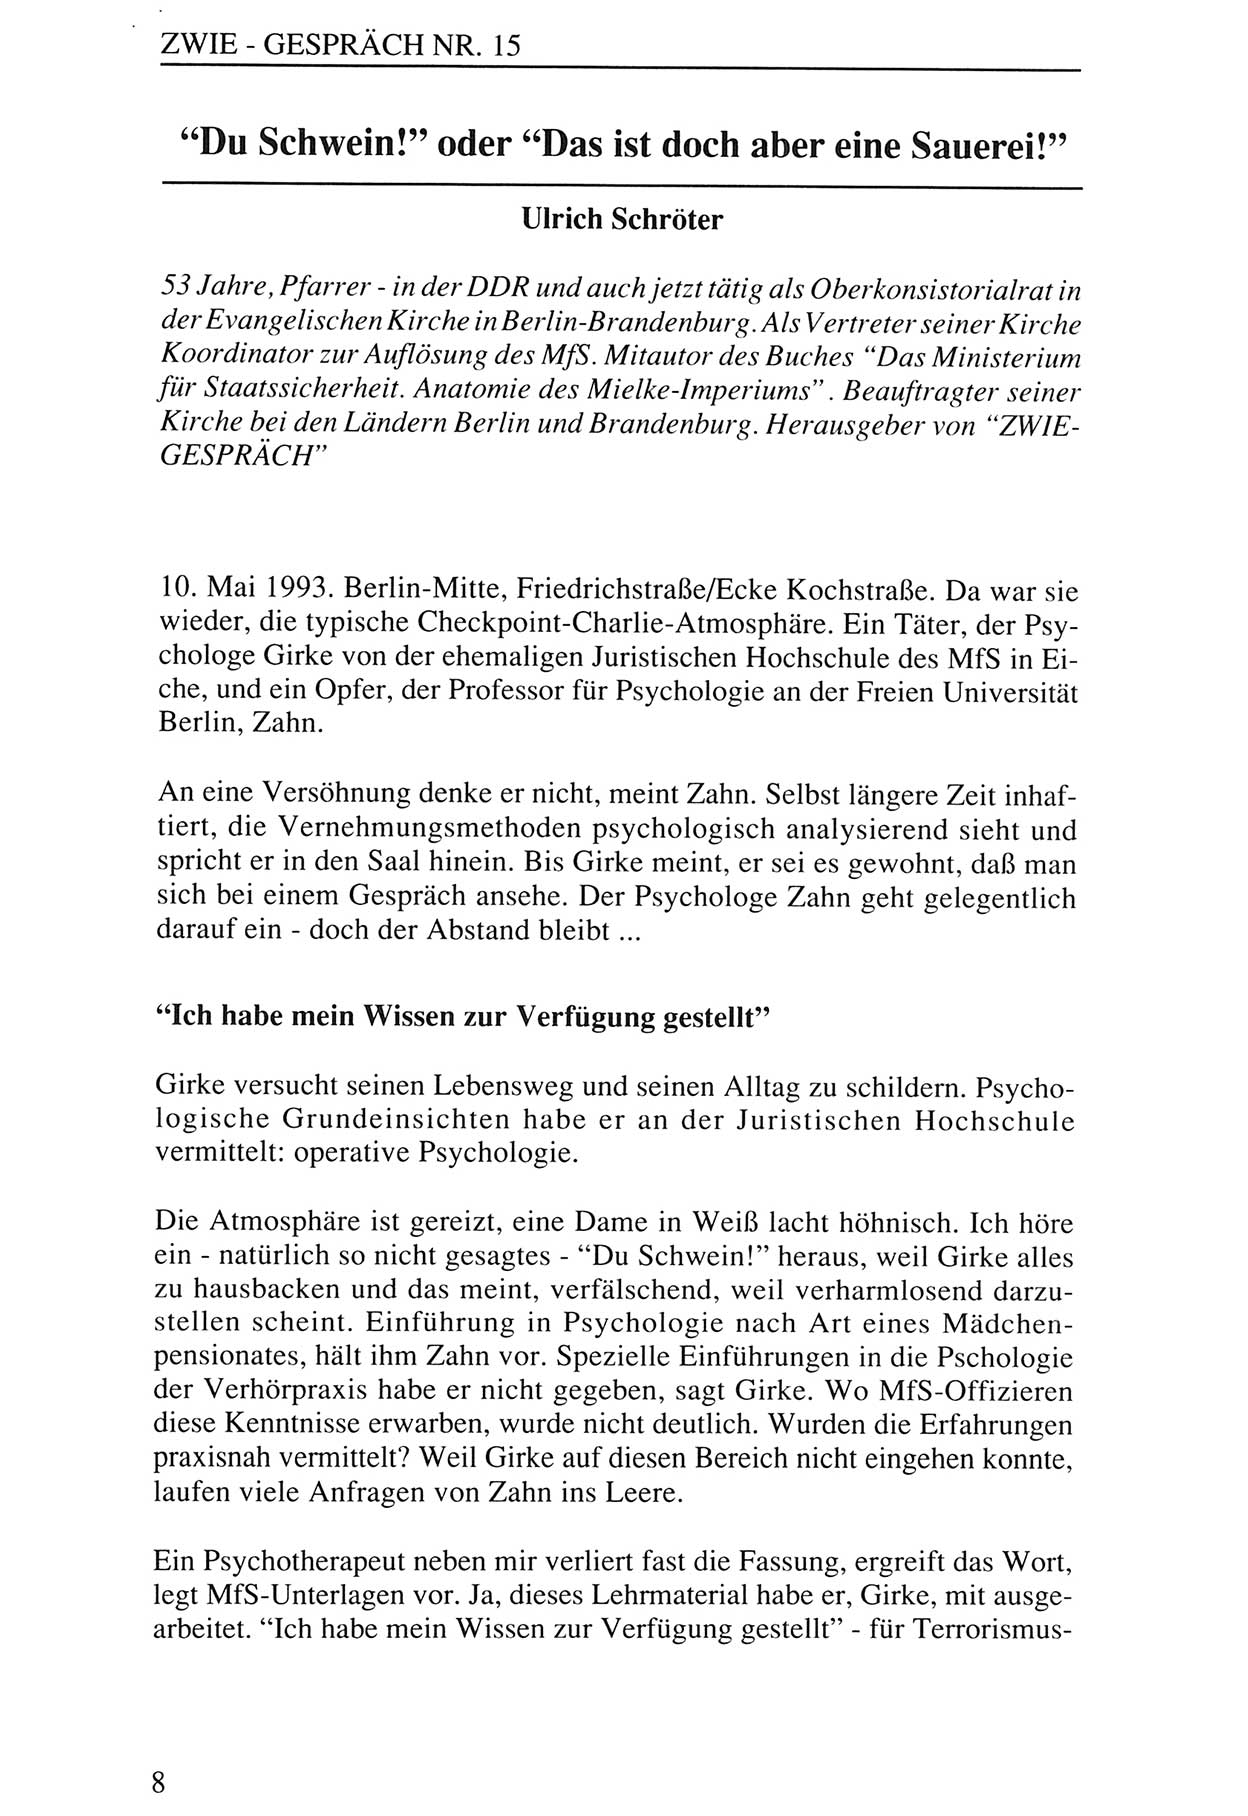 Zwie-Gespräch, Beiträge zur Aufarbeitung der Staatssicherheits-Vergangenheit [Deutsche Demokratische Republik (DDR)], Ausgabe Nr. 15, Berlin 1993, Seite 8 (Zwie-Gespr. Ausg. 15 1993, S. 8)